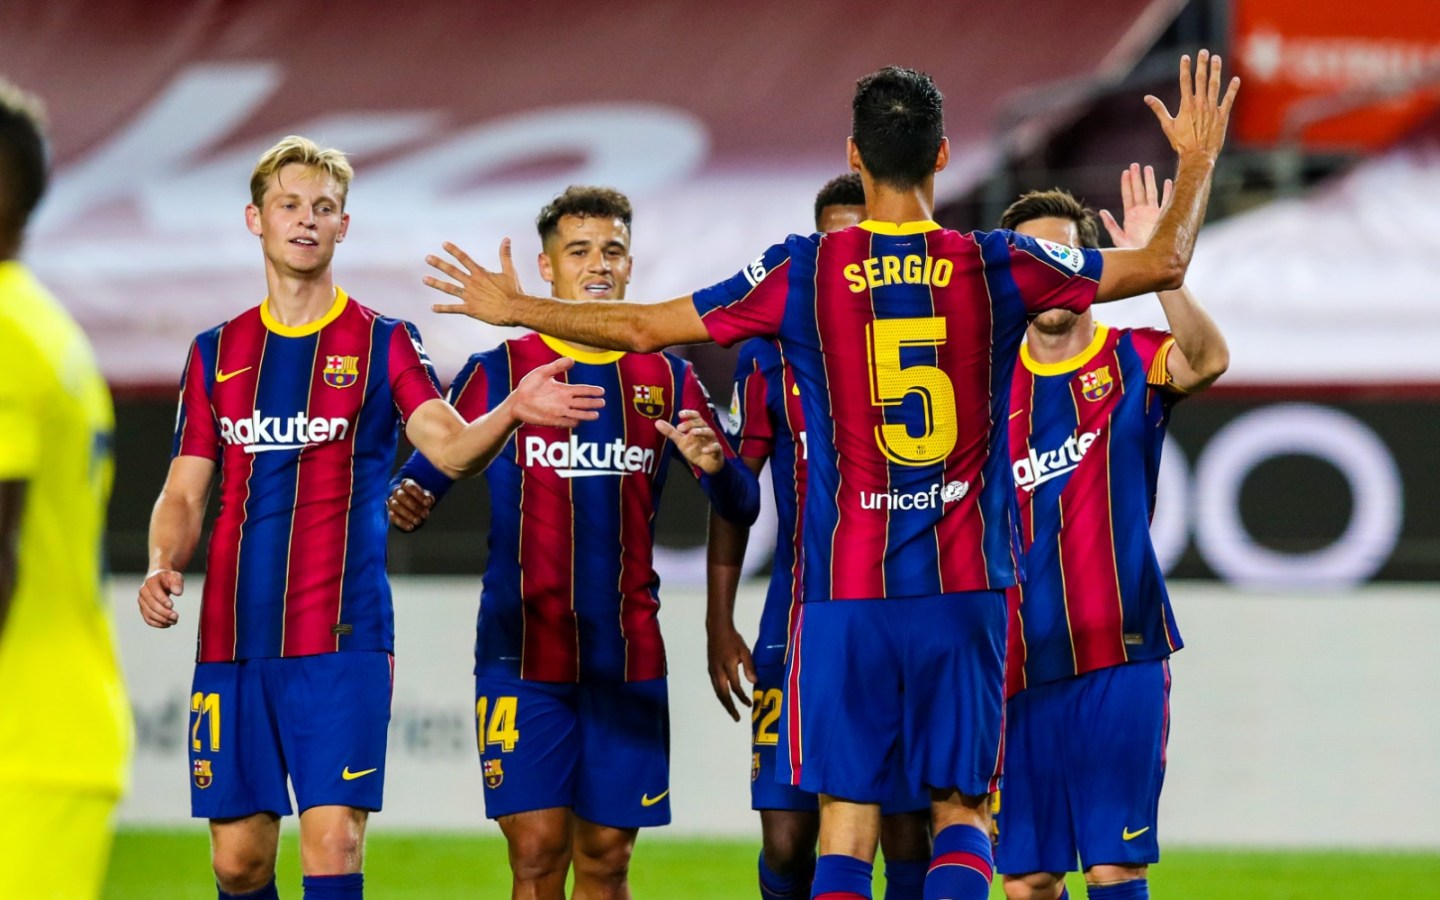 Les huit joueurs devraient faire leurs débuts au Clasico pour Barcelone